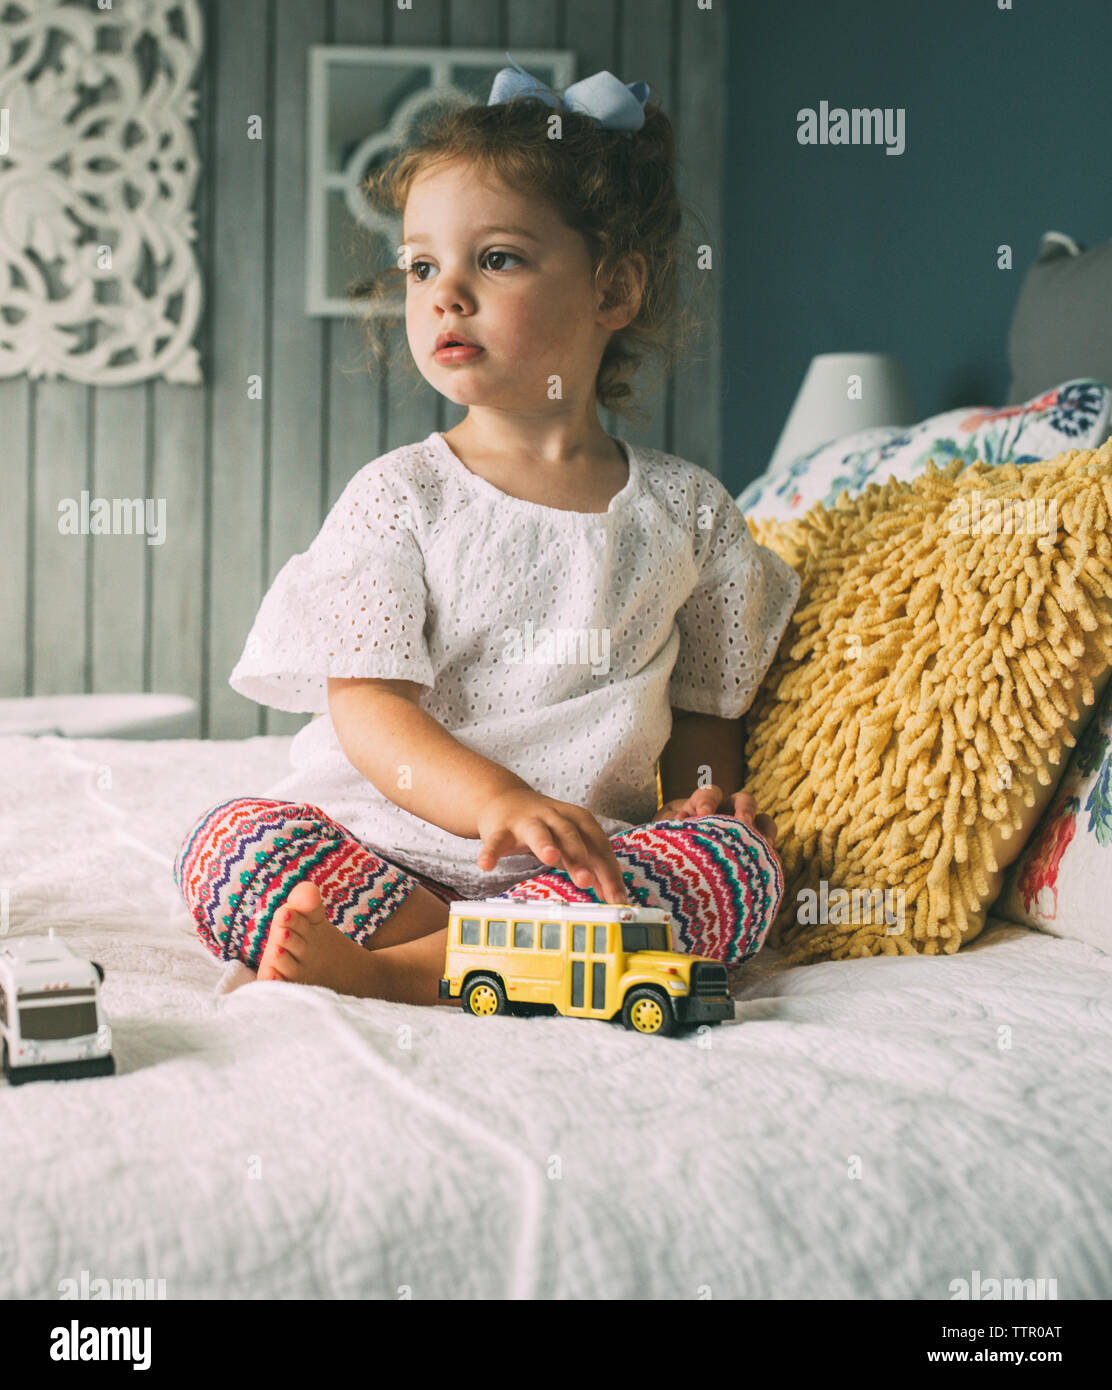 Premurosa ragazza con giocattoli seduta sul letto Foto Stock